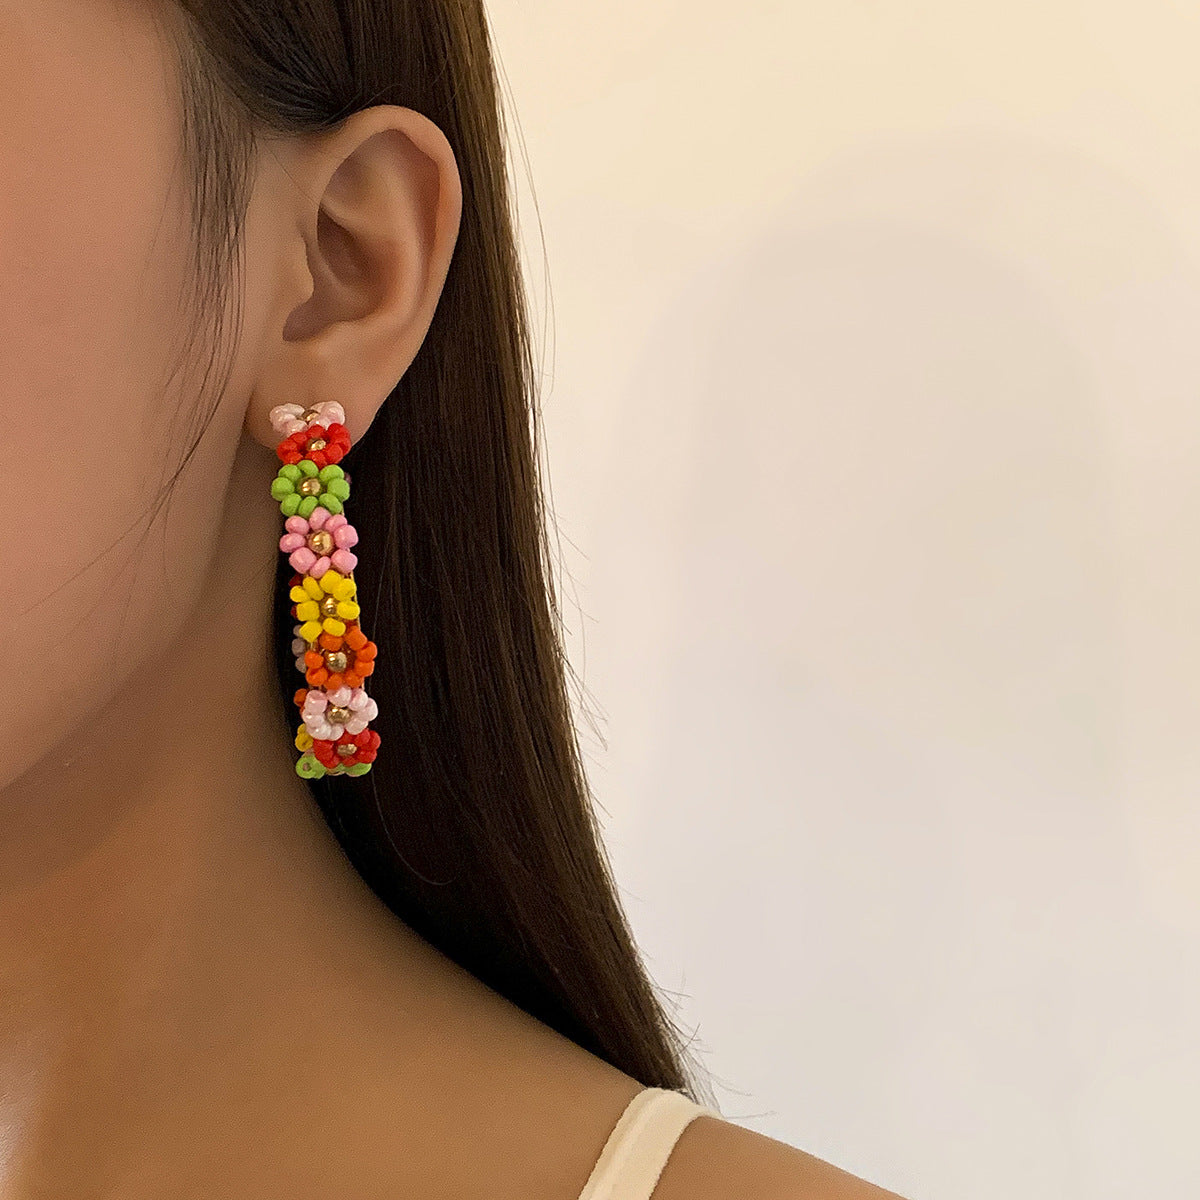 Daisy Hoop Earrings with Vienna Verve Charm